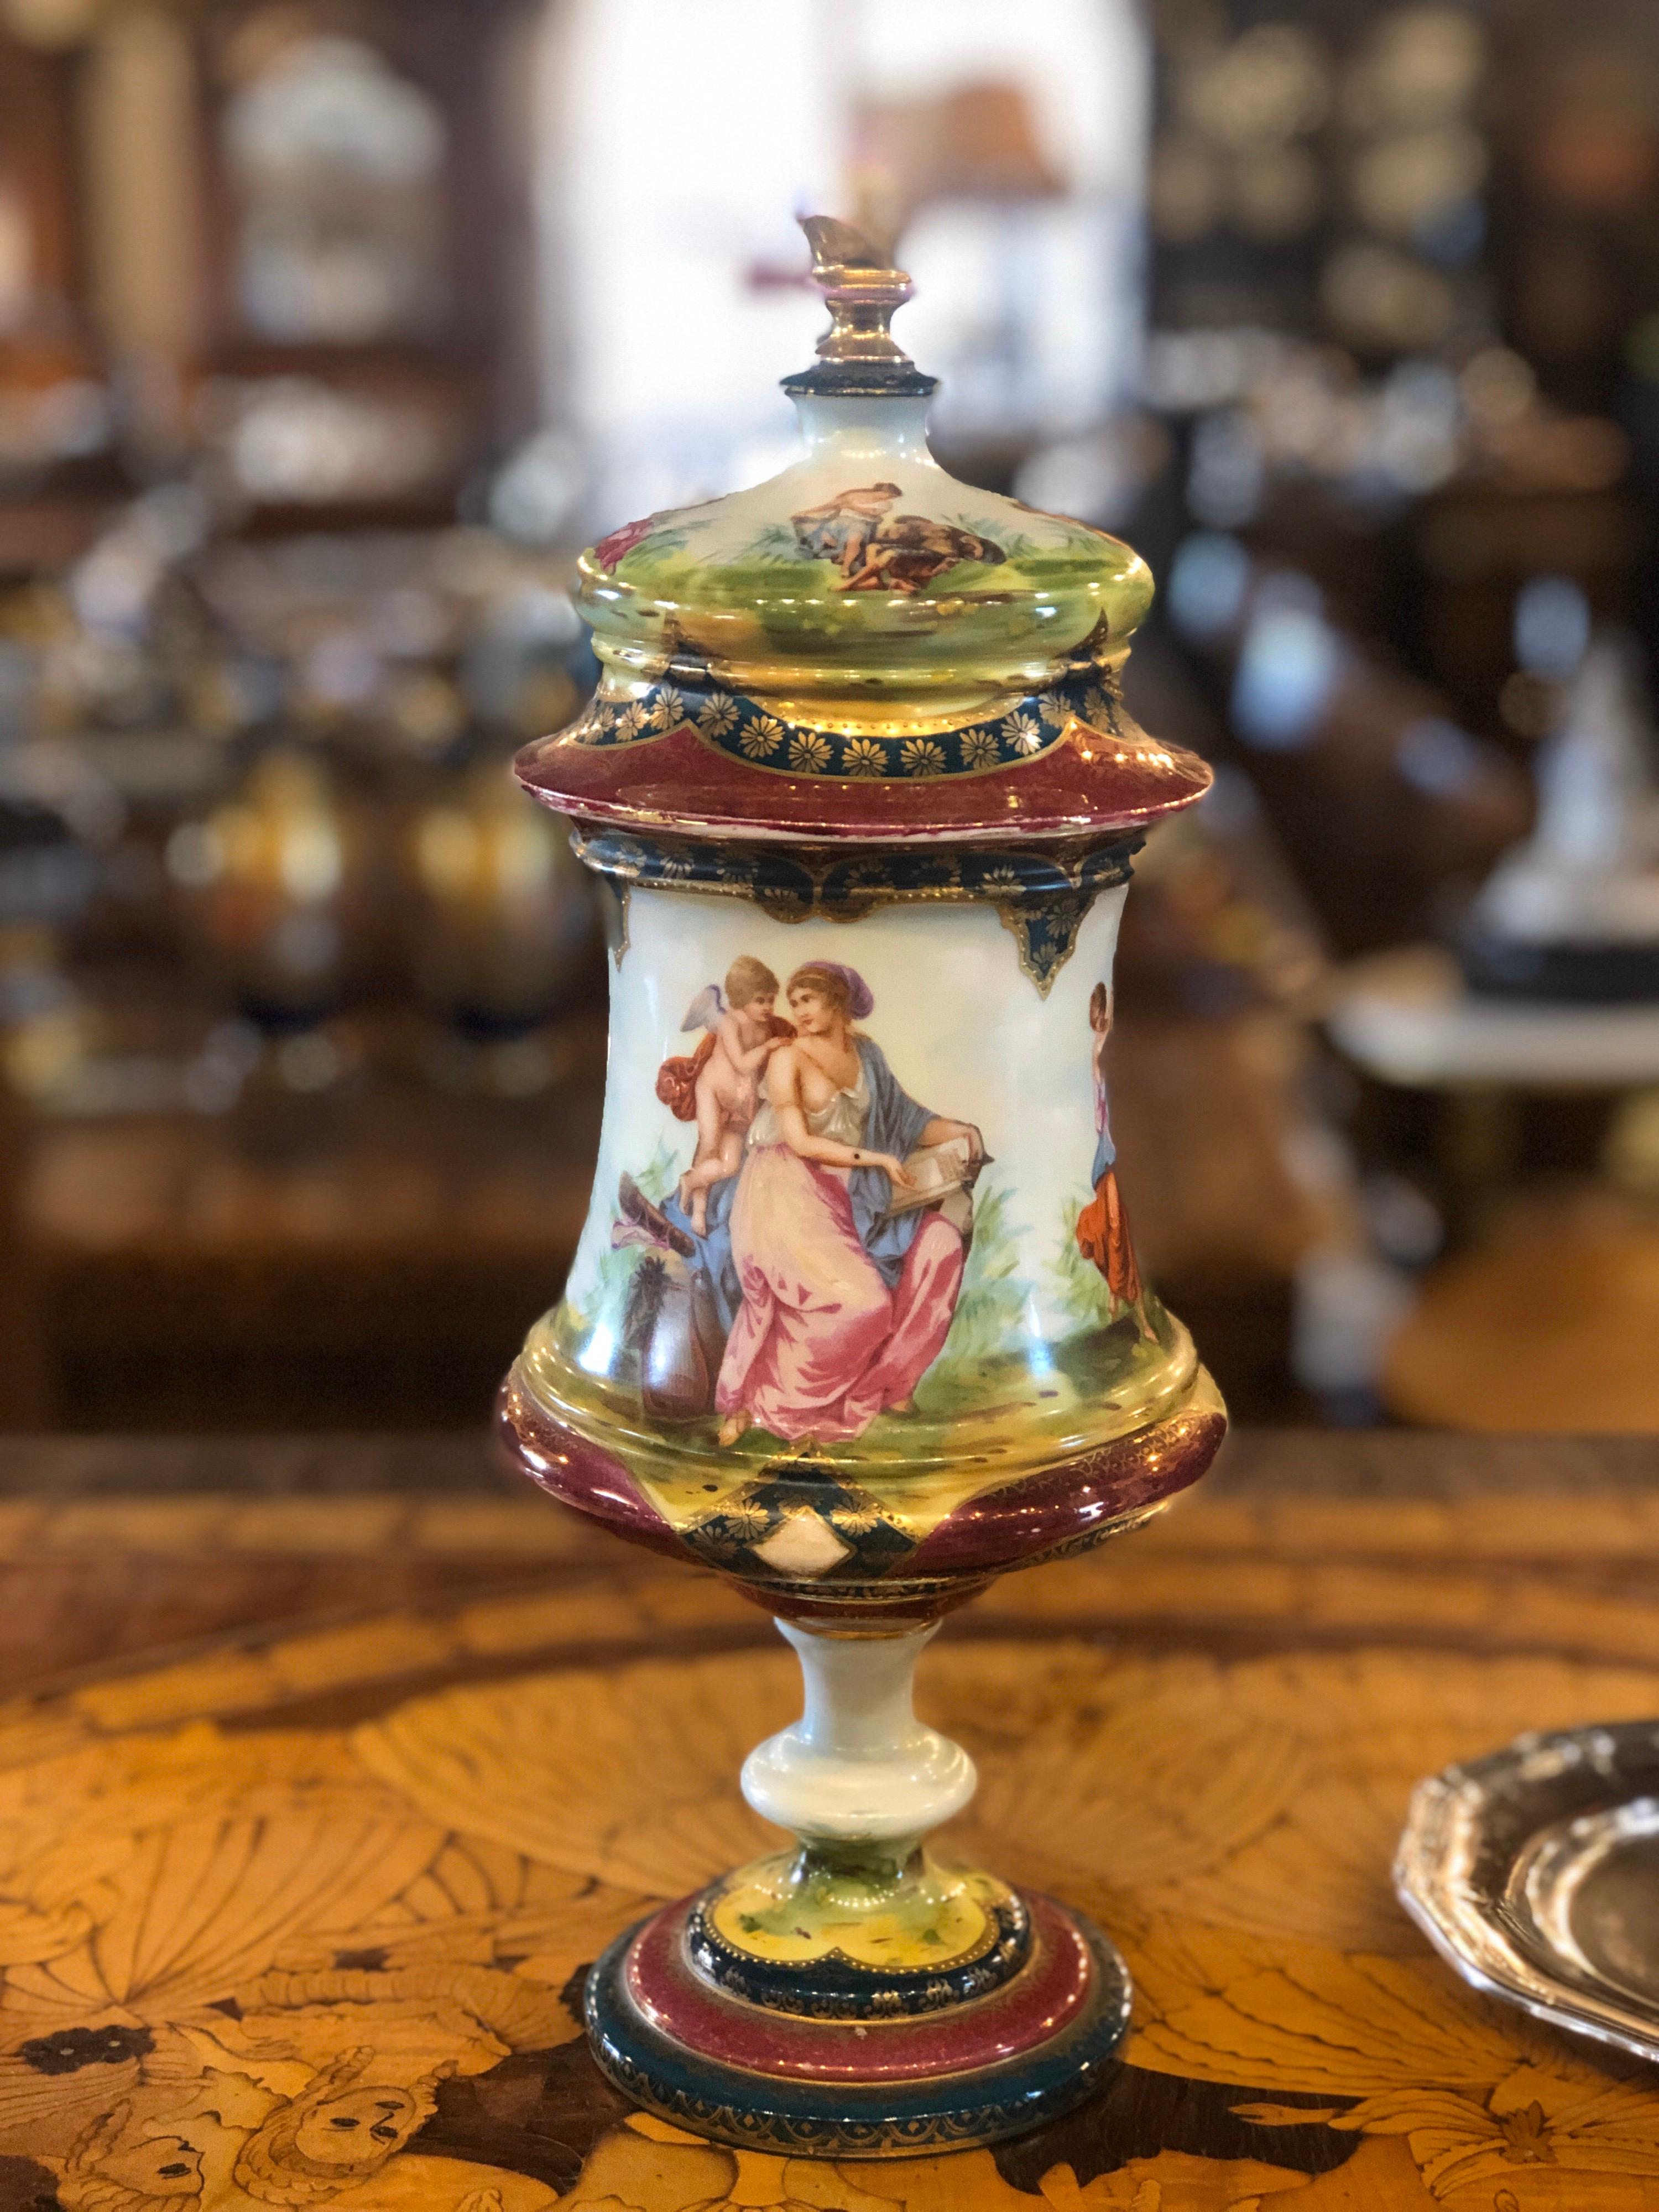 Eine Urne aus echtem Wiener Porzellan, mit klassischer Figurendarstellung. Zeitraum 19. Jahrhundert in sehr gutem Zustand der Erhaltung, ist dies ein schönes Beispiel für feine Wiener königlichen Porzellan.

Marke unter dem Fuß, die den Jahren